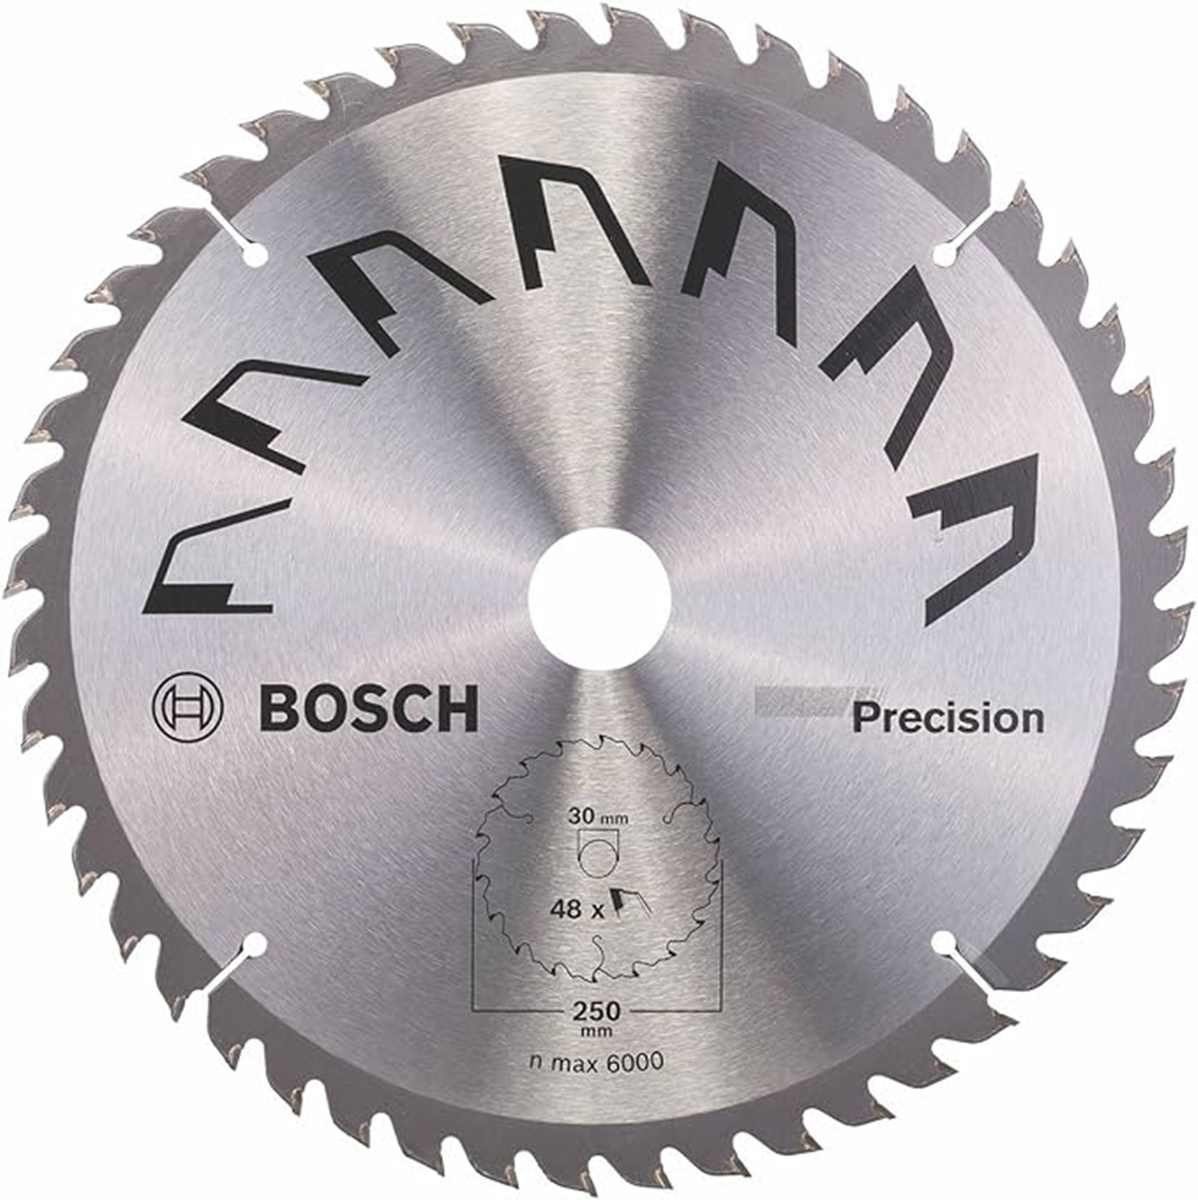 BOSCH Bohrfutter Bosch Kreissägeblatt Precision 250 x 2 x 30,Z48 feine Schnitte Holz